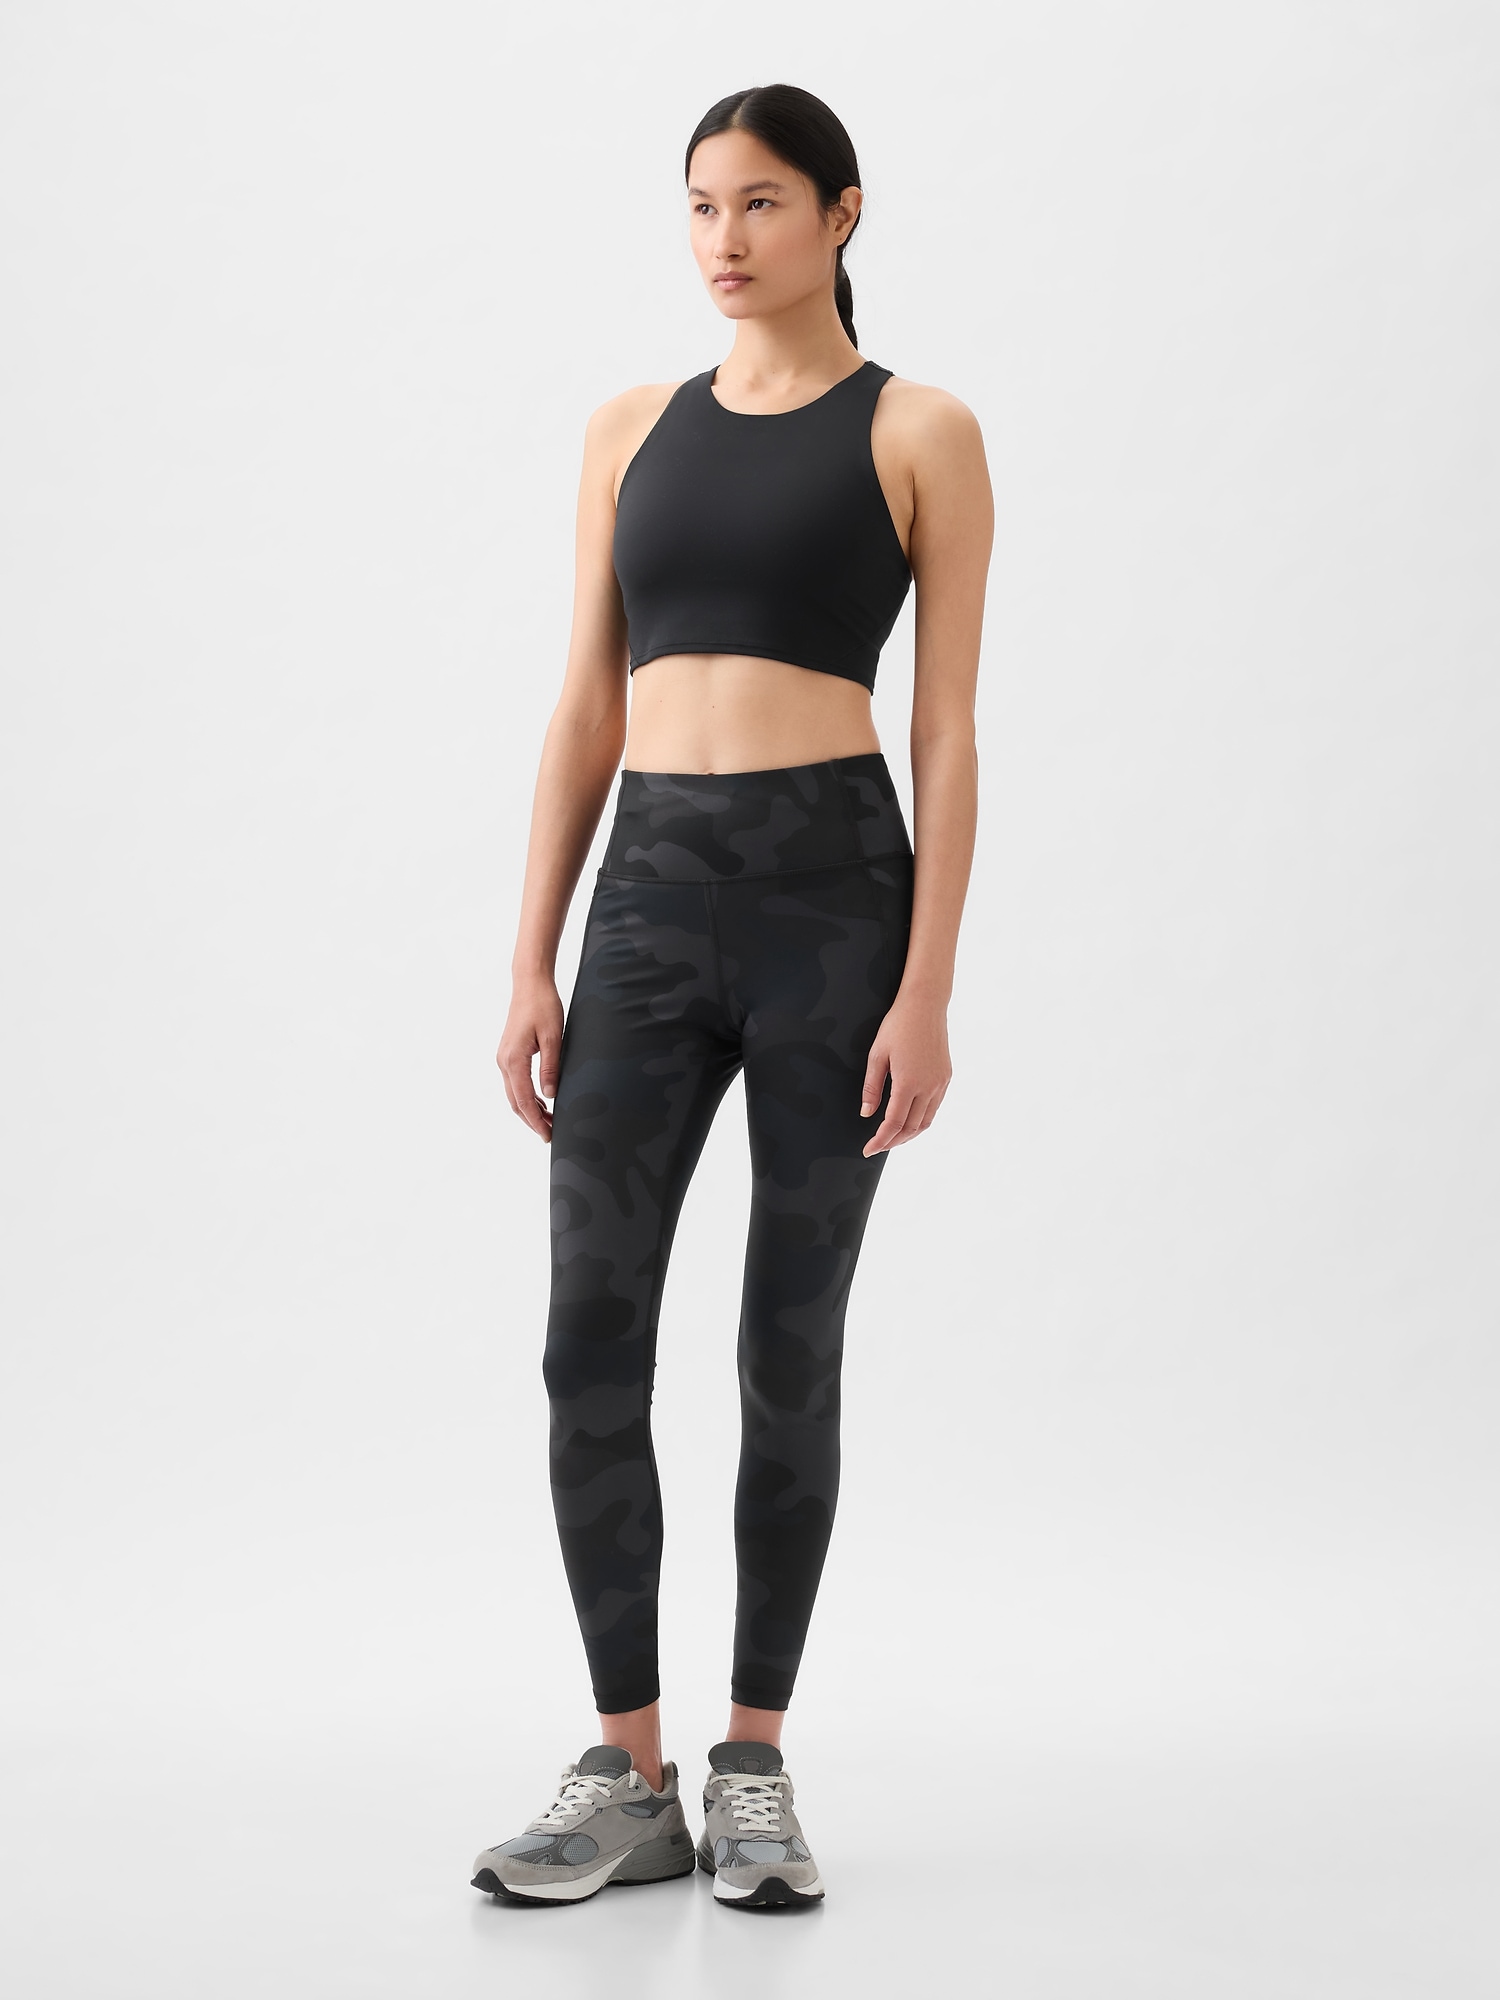 Lululemon Align Super High-Rise leggings 25” size 0